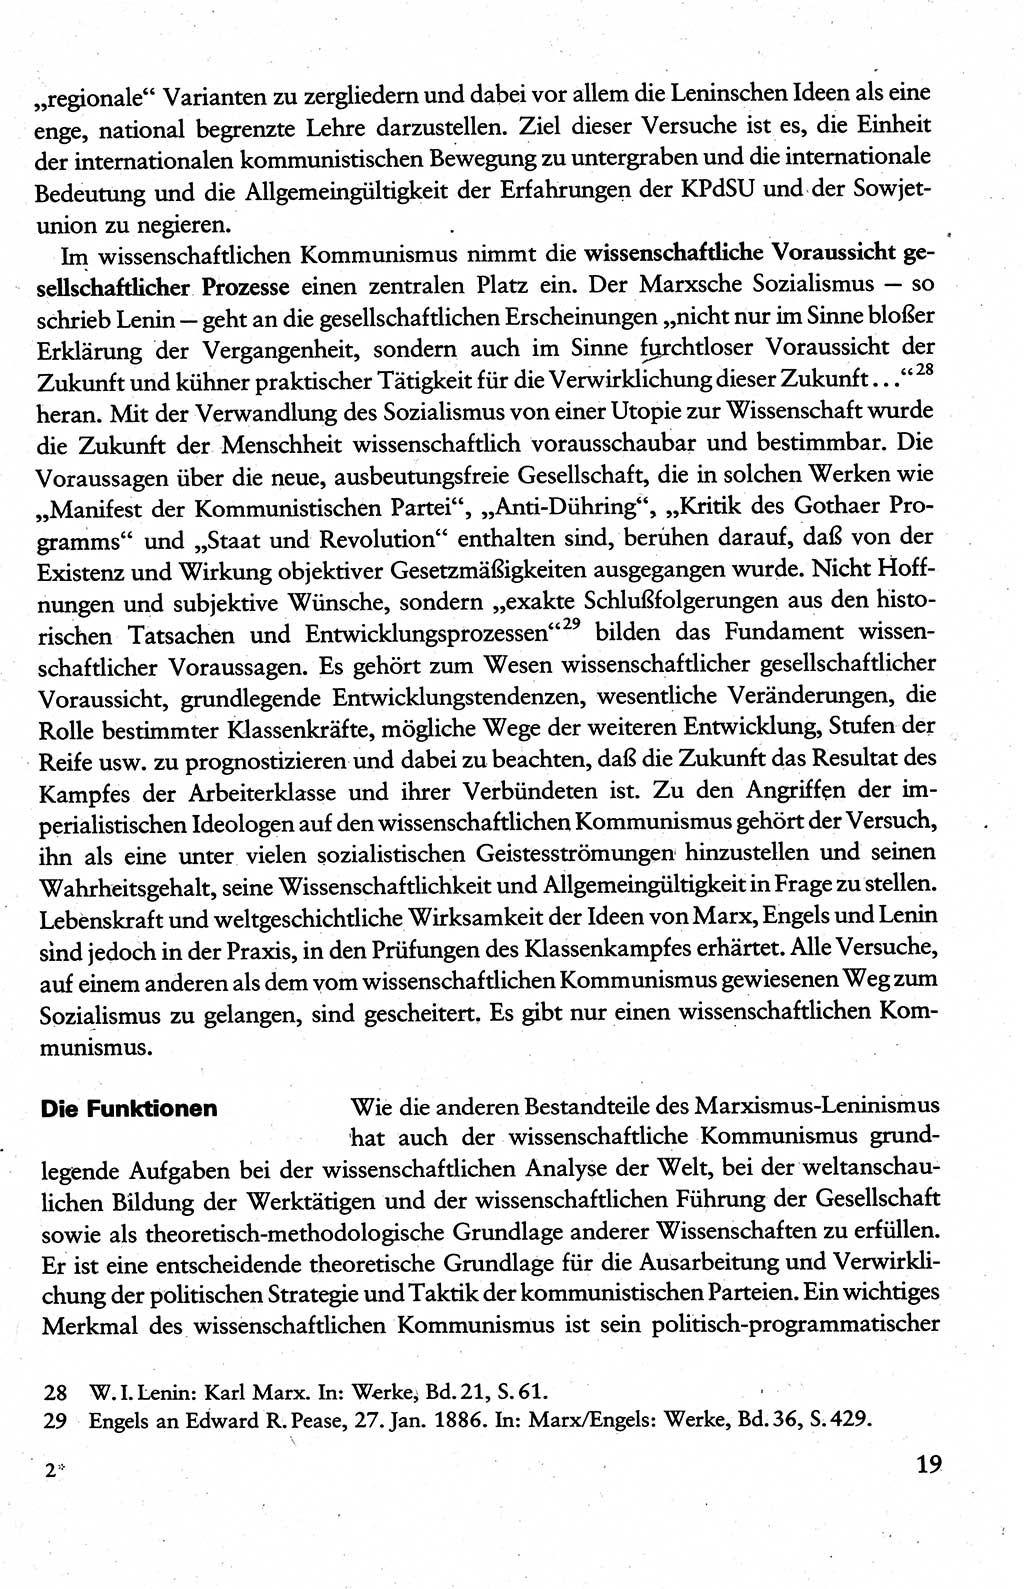 Wissenschaftlicher Kommunismus [Deutsche Demokratische Republik (DDR)], Lehrbuch für das marxistisch-leninistische Grundlagenstudium 1983, Seite 19 (Wiss. Komm. DDR Lb. 1983, S. 19)